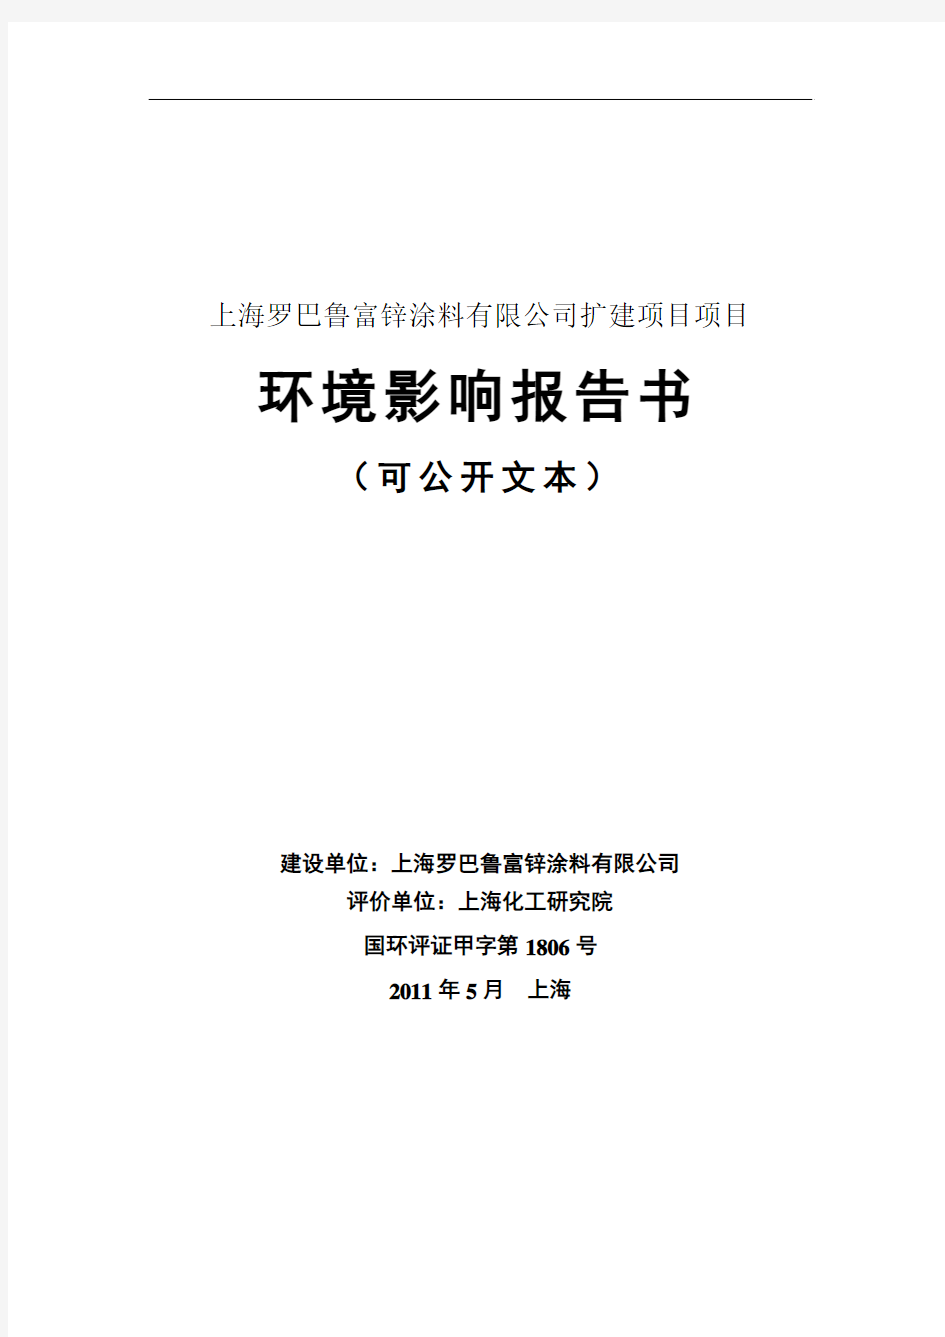 上海罗巴鲁富锌涂料有限公司扩建项目项目环境影响报告书